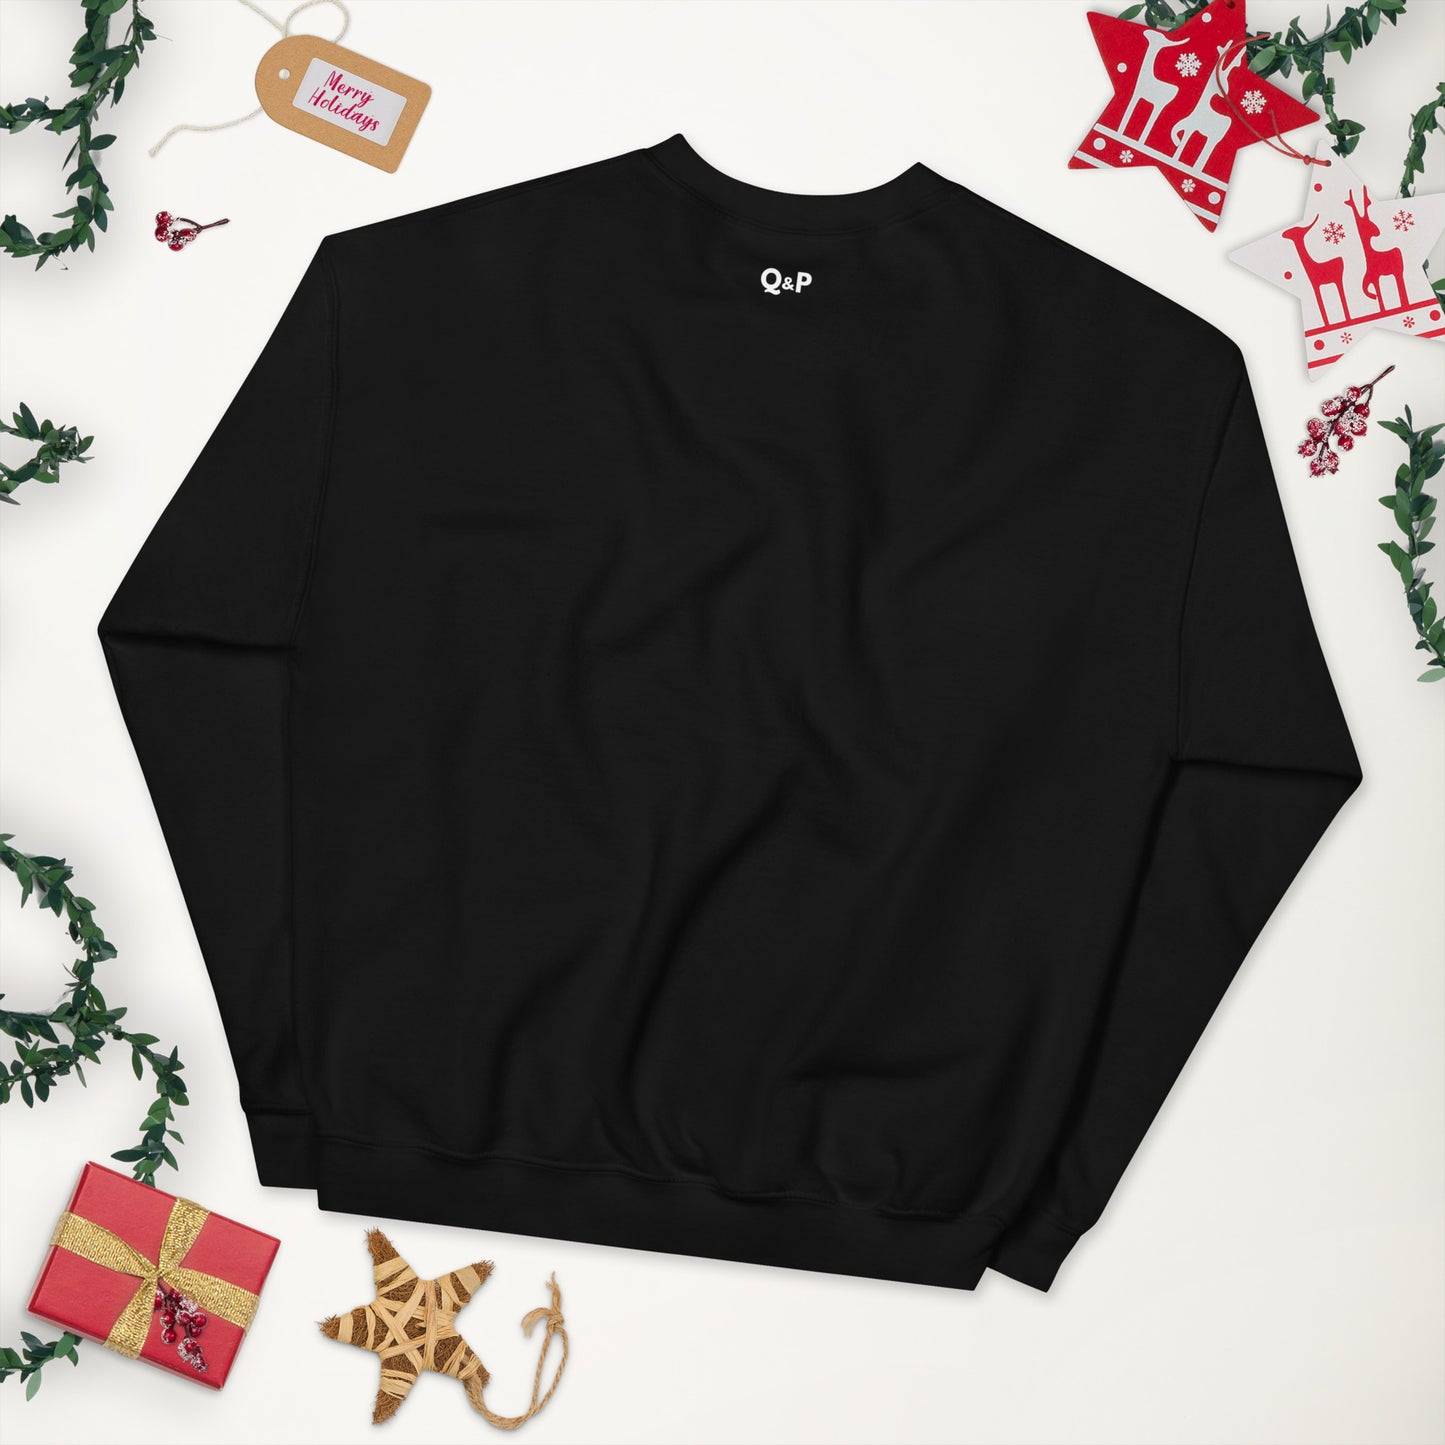 Abide - Christmas Unisex Sweatshirt